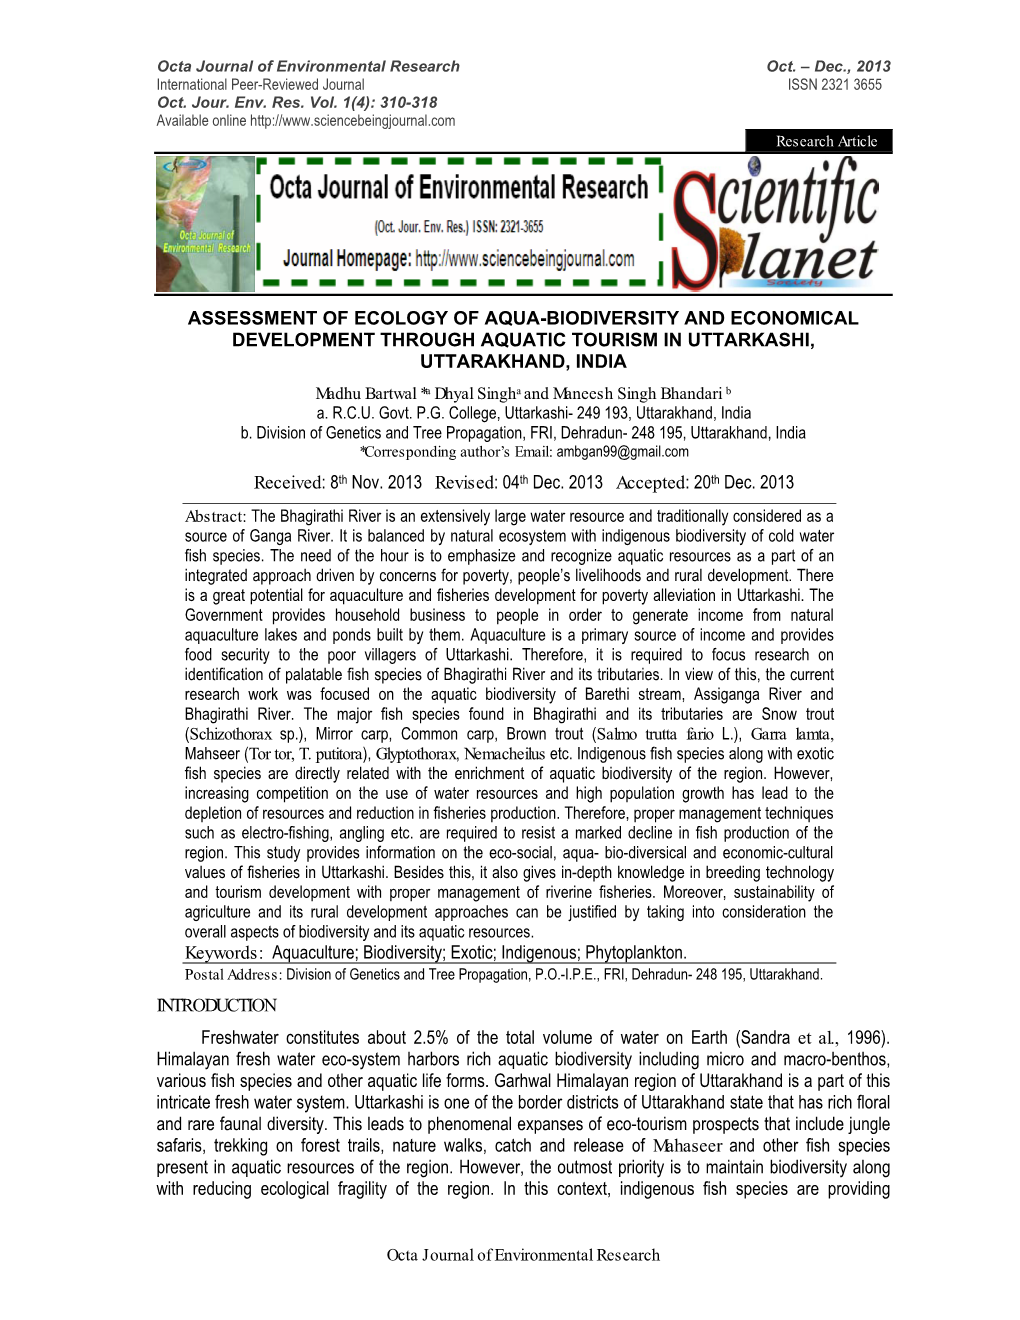 Assessment of Ecology of Aqua-Biodiversity and Economical Development Through Aquatic Tourism in Uttarkashi, Uttarakhand, India